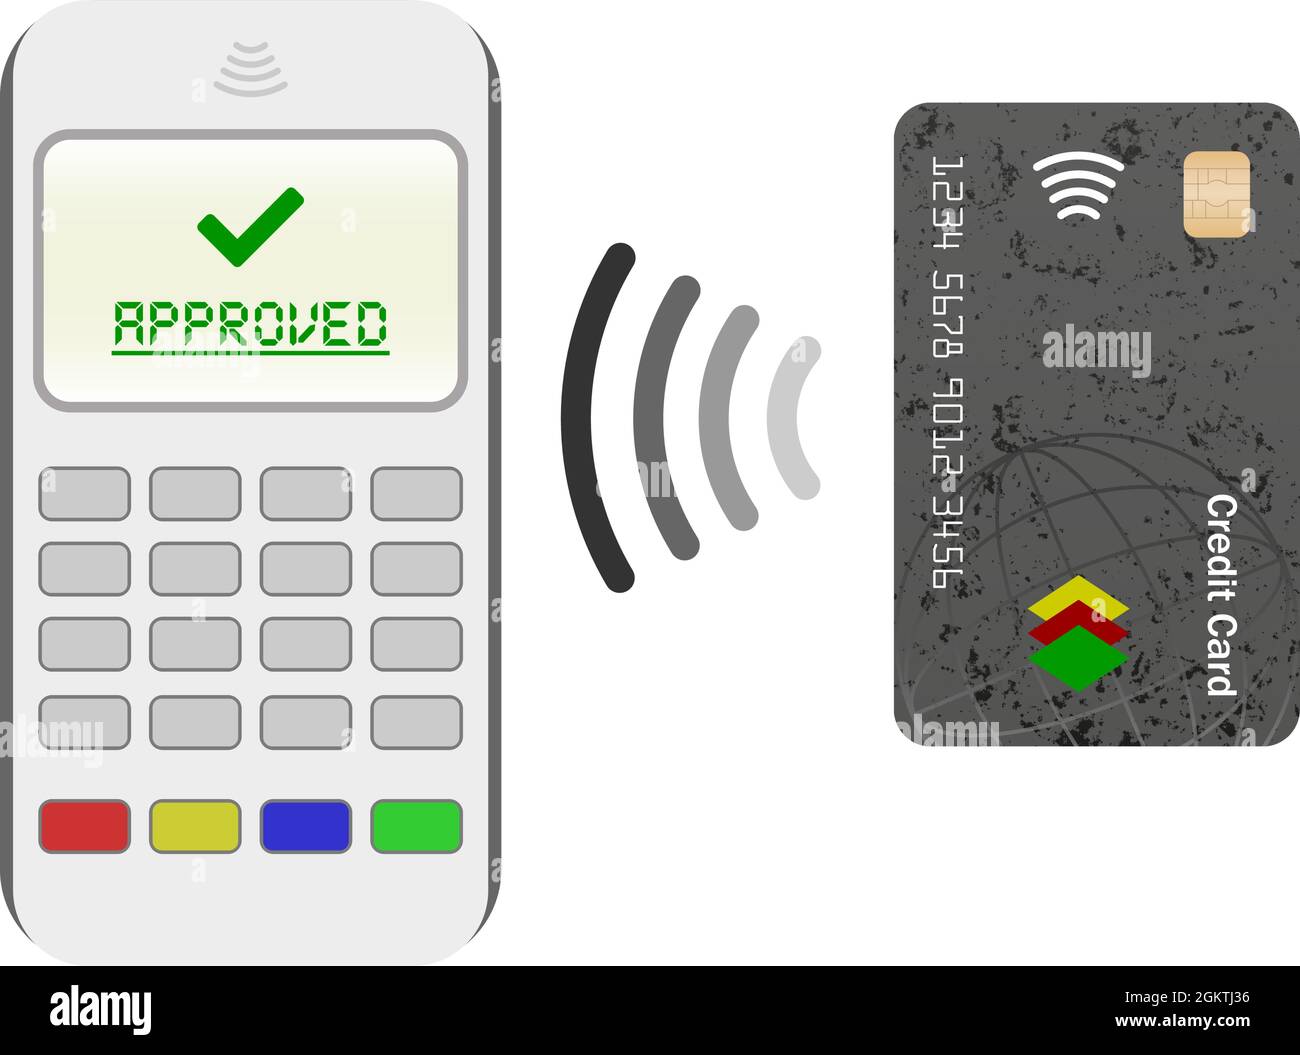 Paiement sans contact, nfc, achat par carte de crédit, paiement, touchez pour payer l'illustration vectorielle Illustration de Vecteur